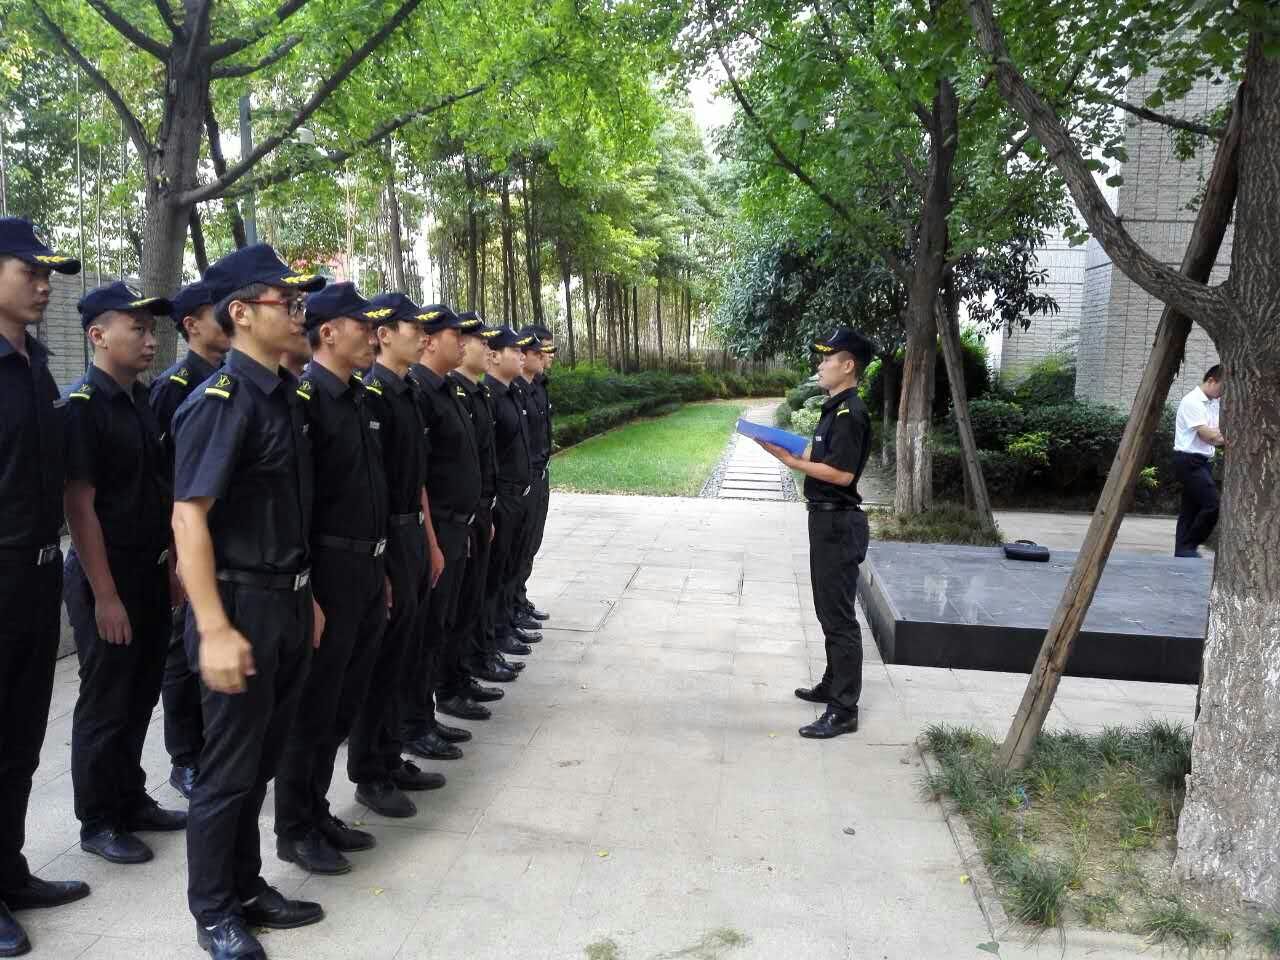 上海中城卫保安服务集团有限公司(简称中城卫 ccg)2005年成立于